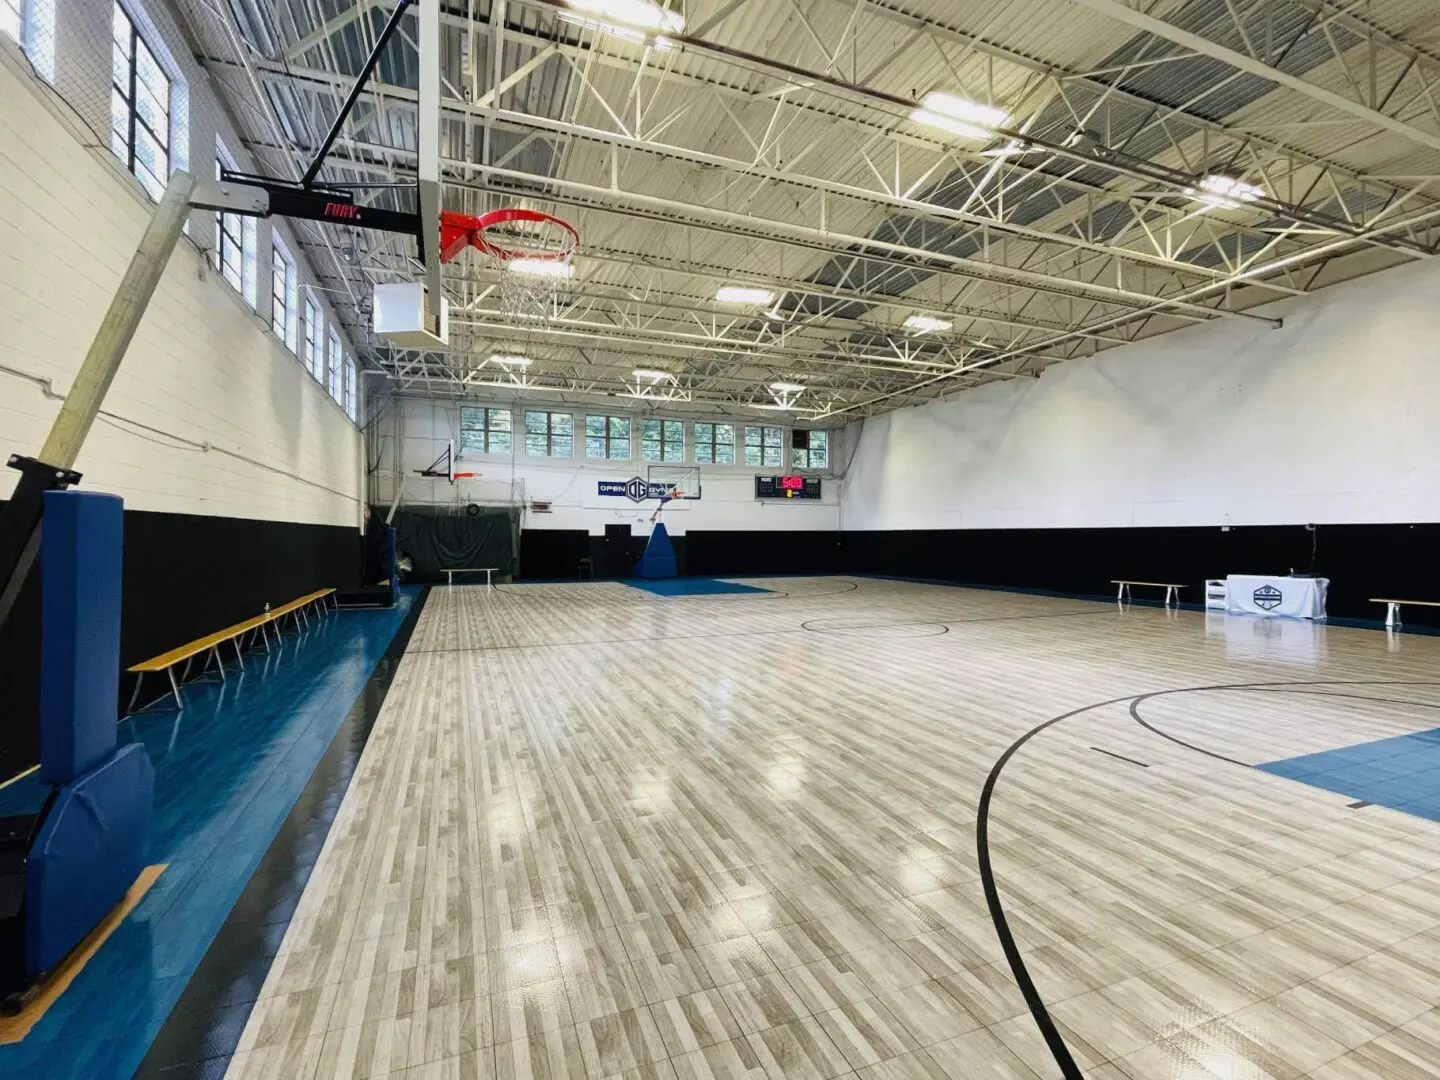 a basketball court